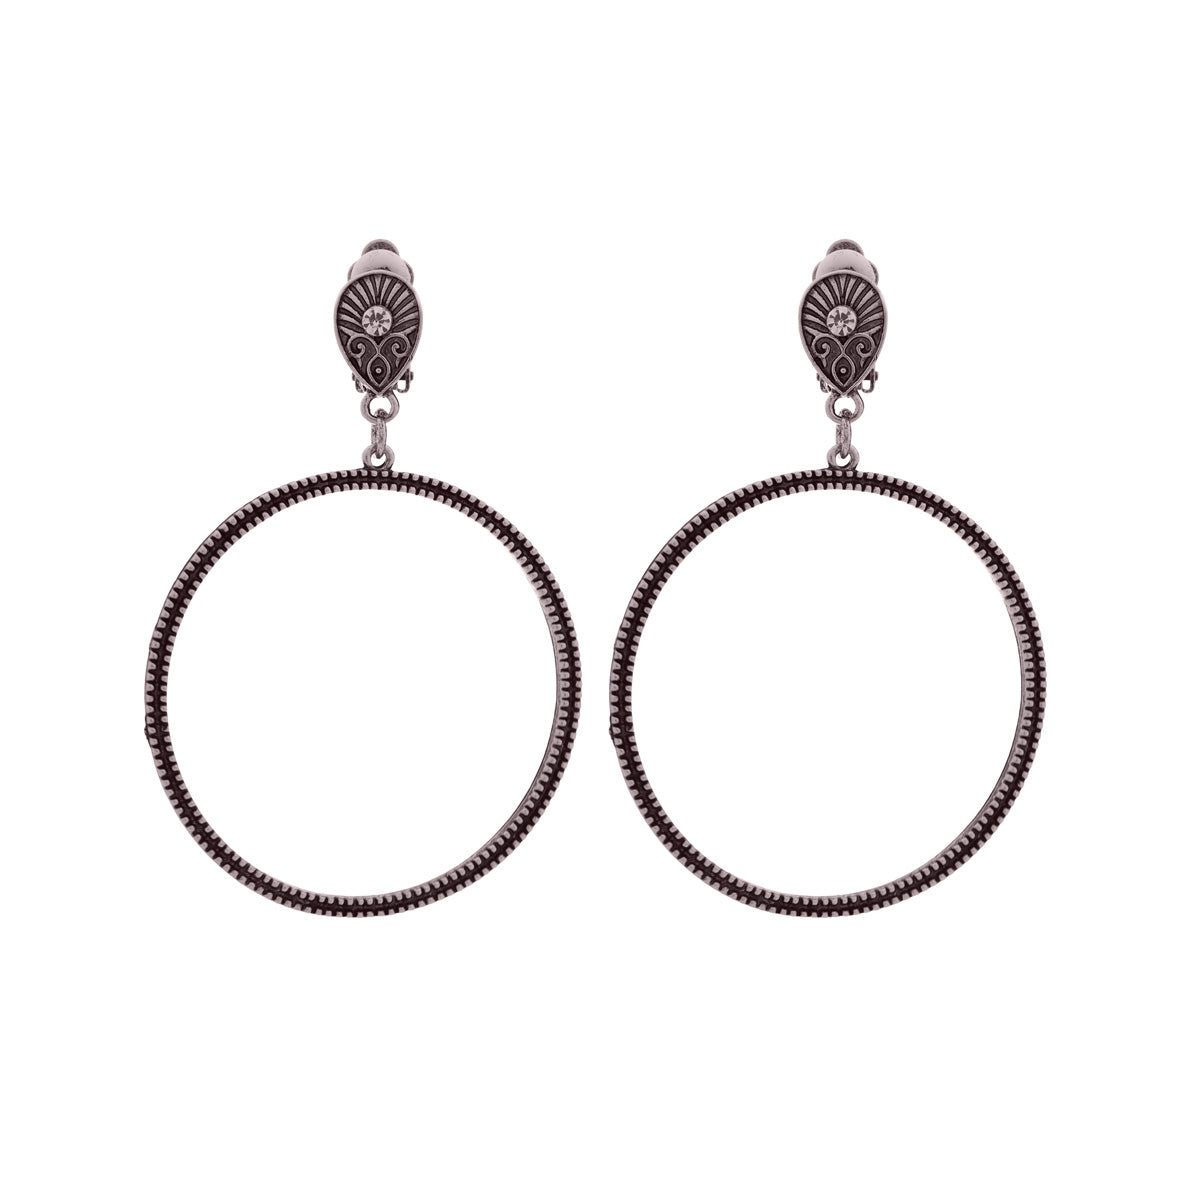 Hanging clip earrings